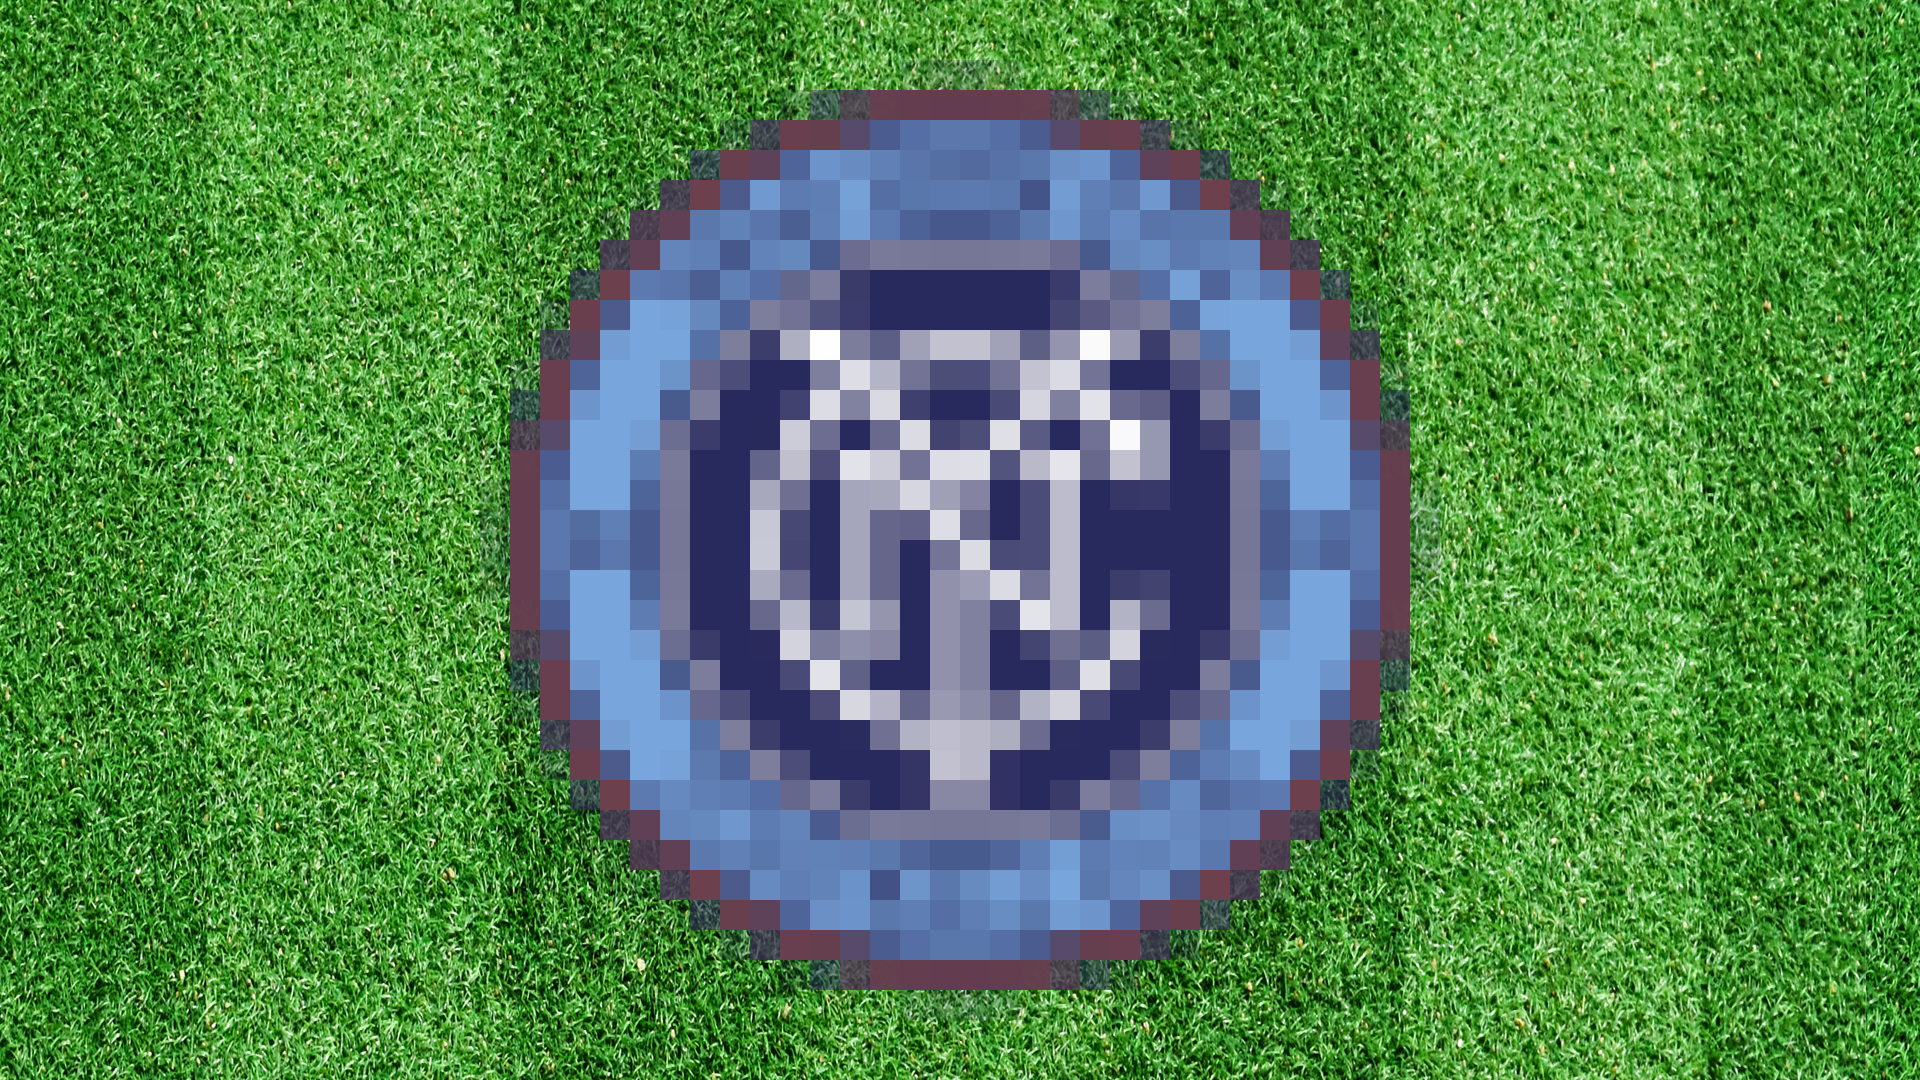 A blurred football badge